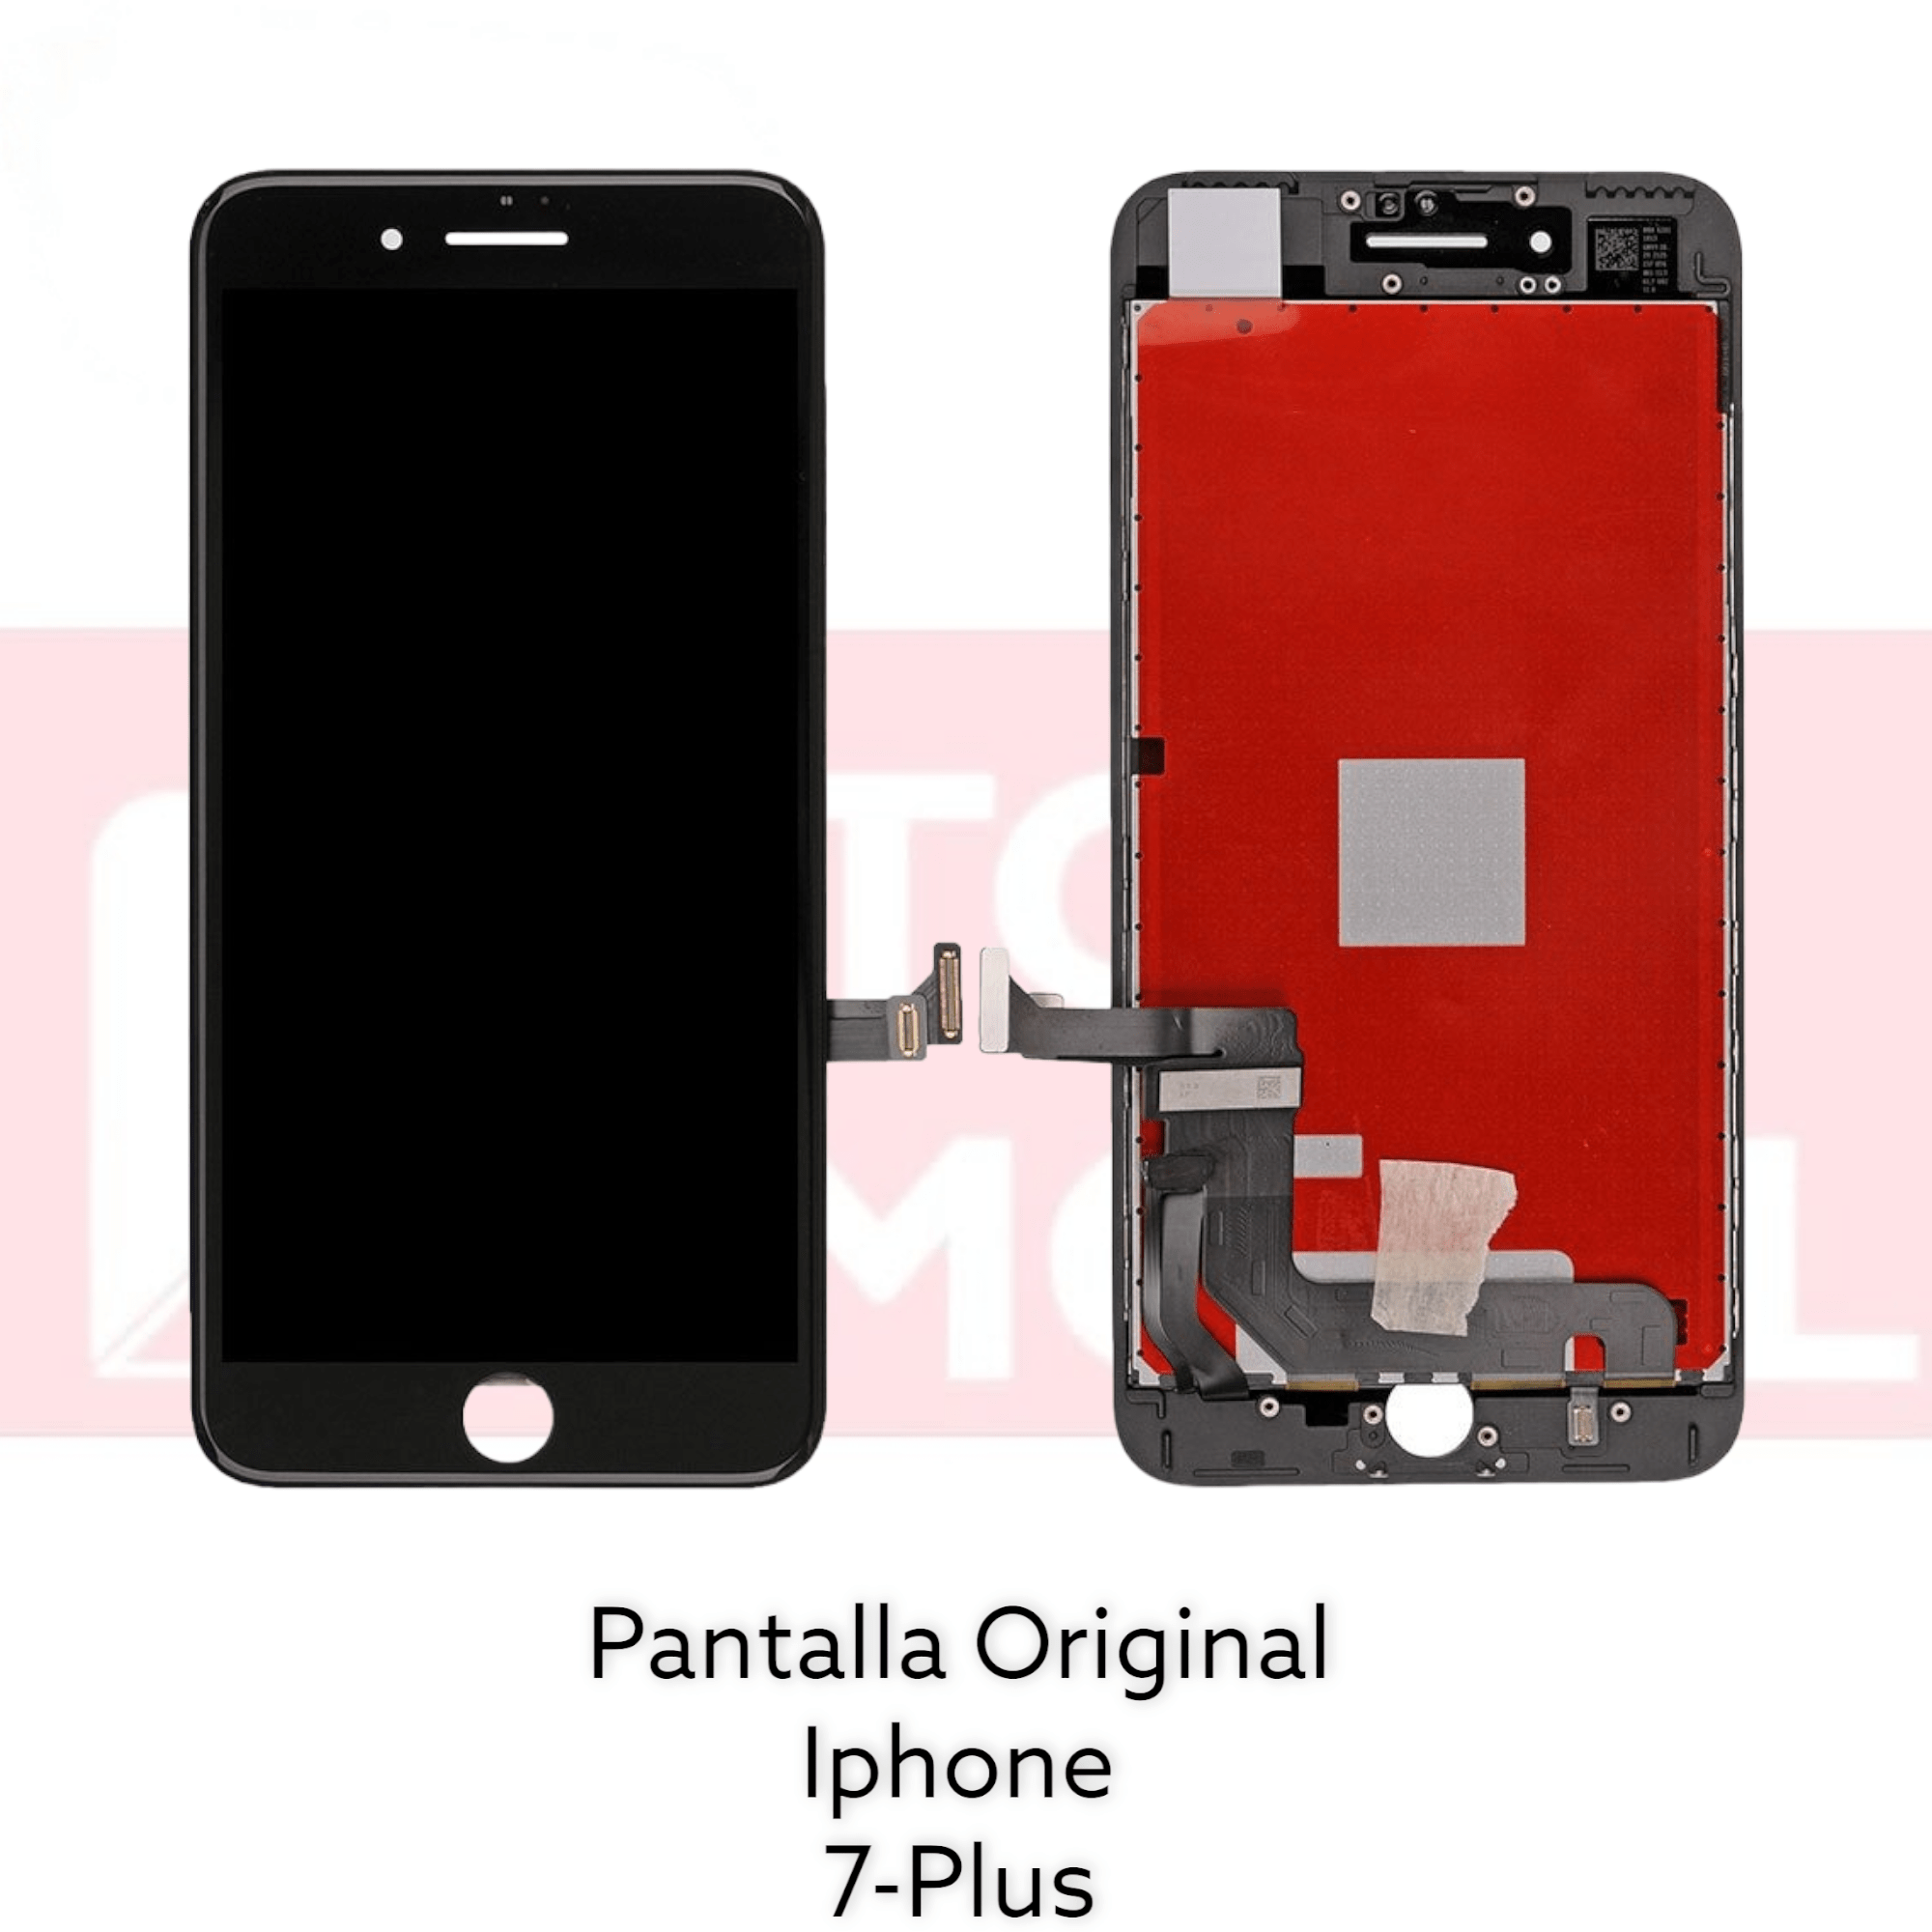 Pantalla IPhone 7 Plus Original - Topmovil Repuestos